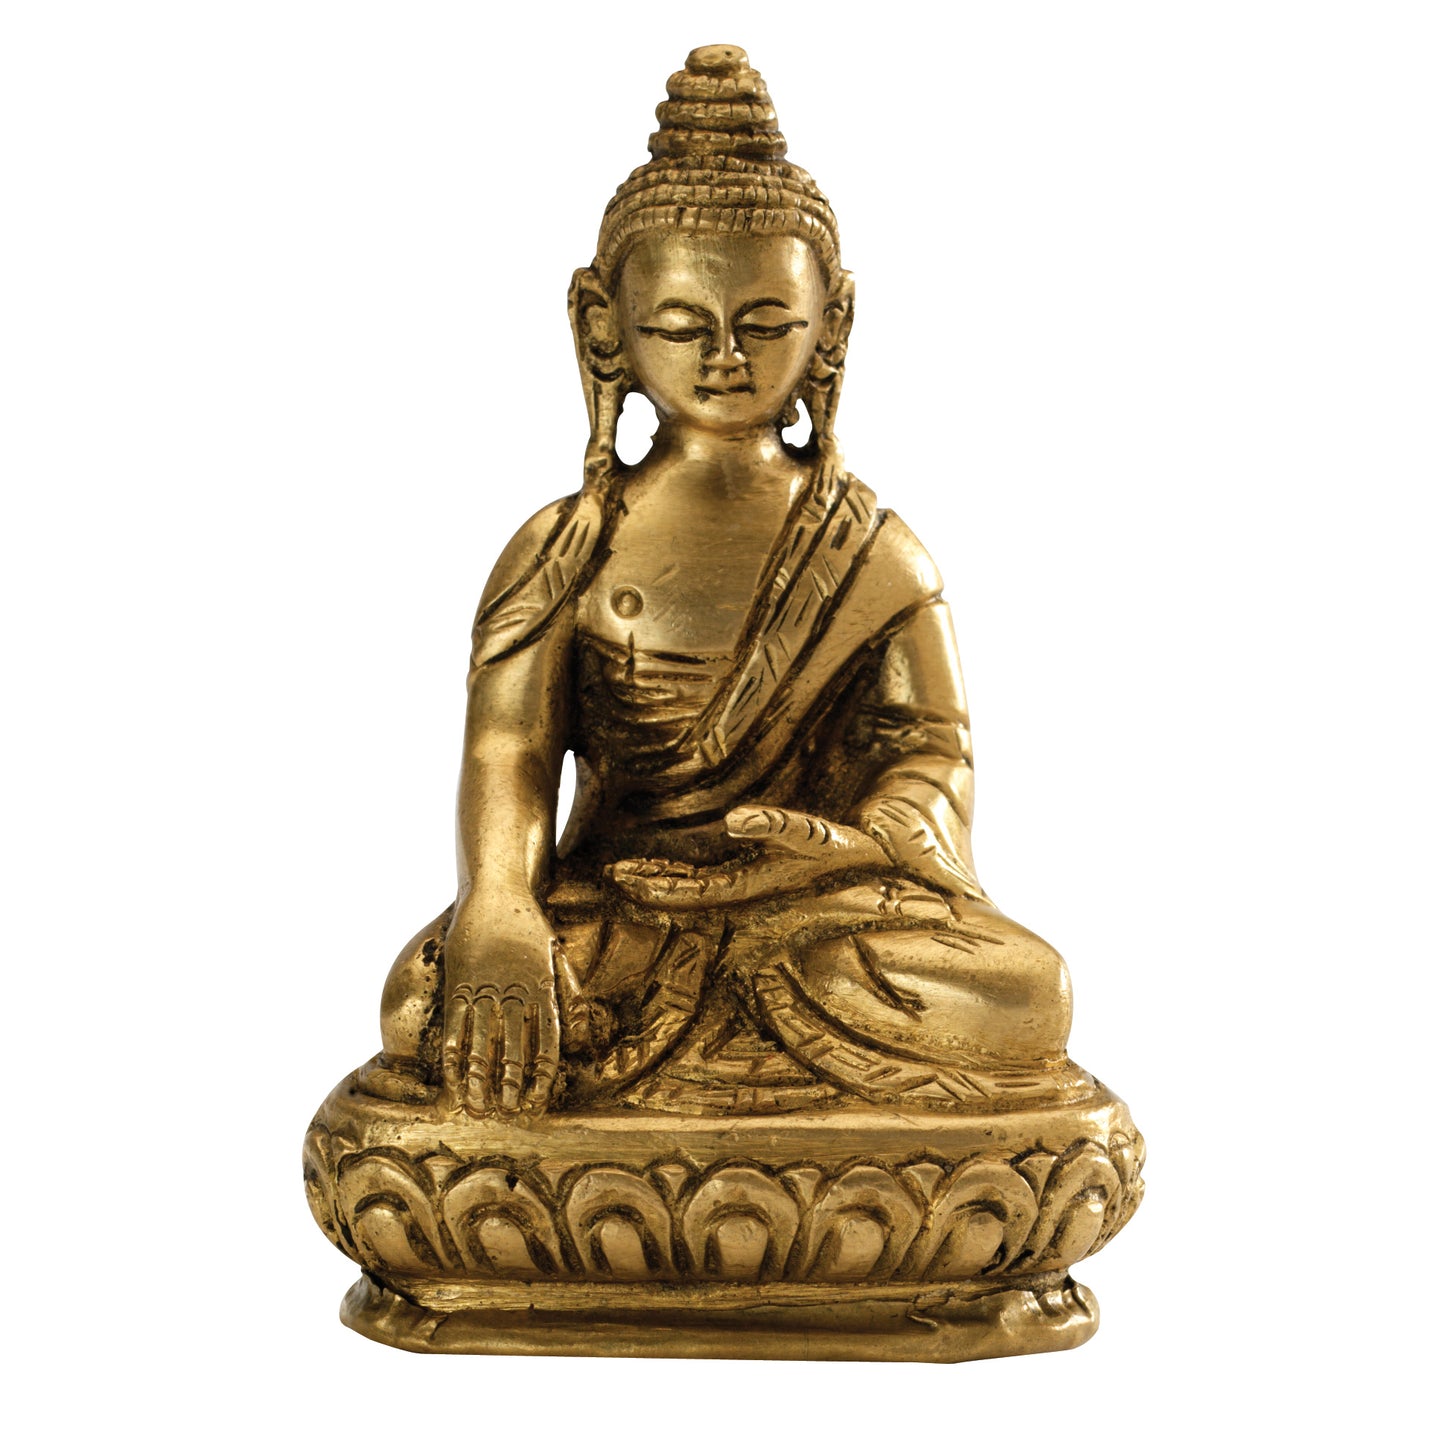 Small Shakyamuni Buddha Statue, 3"